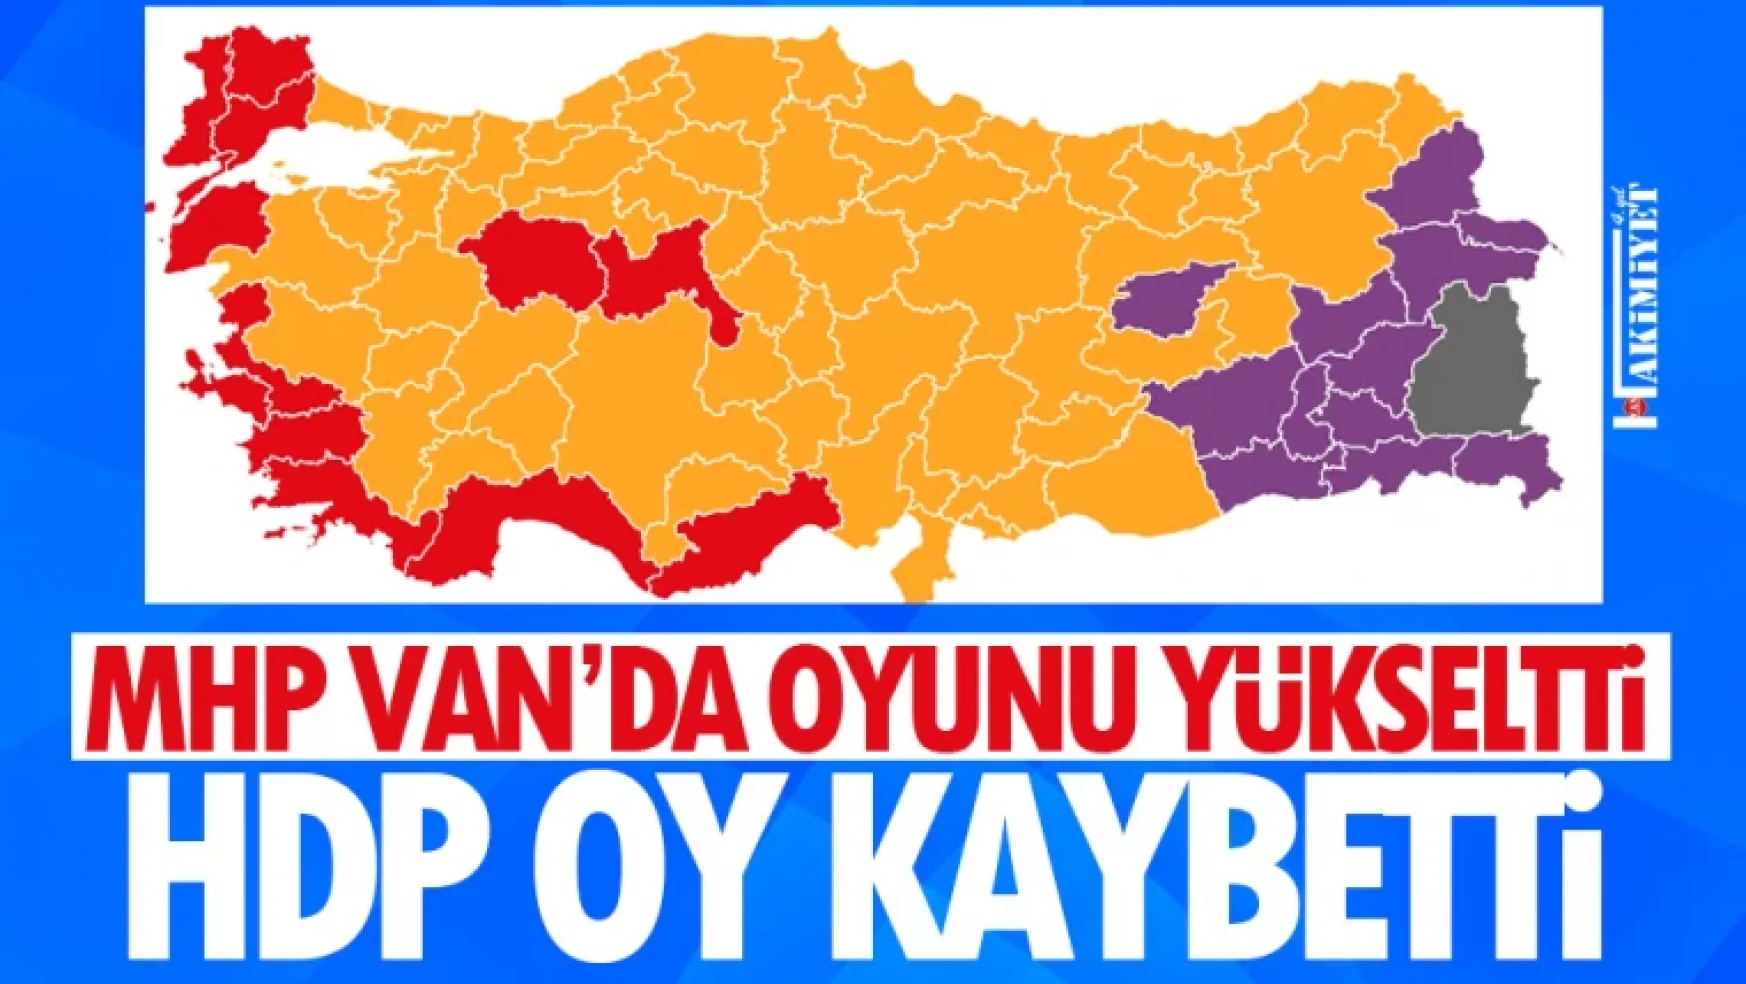 Van'da MHP'nin oyu yükseldi, HDP düşüşte!